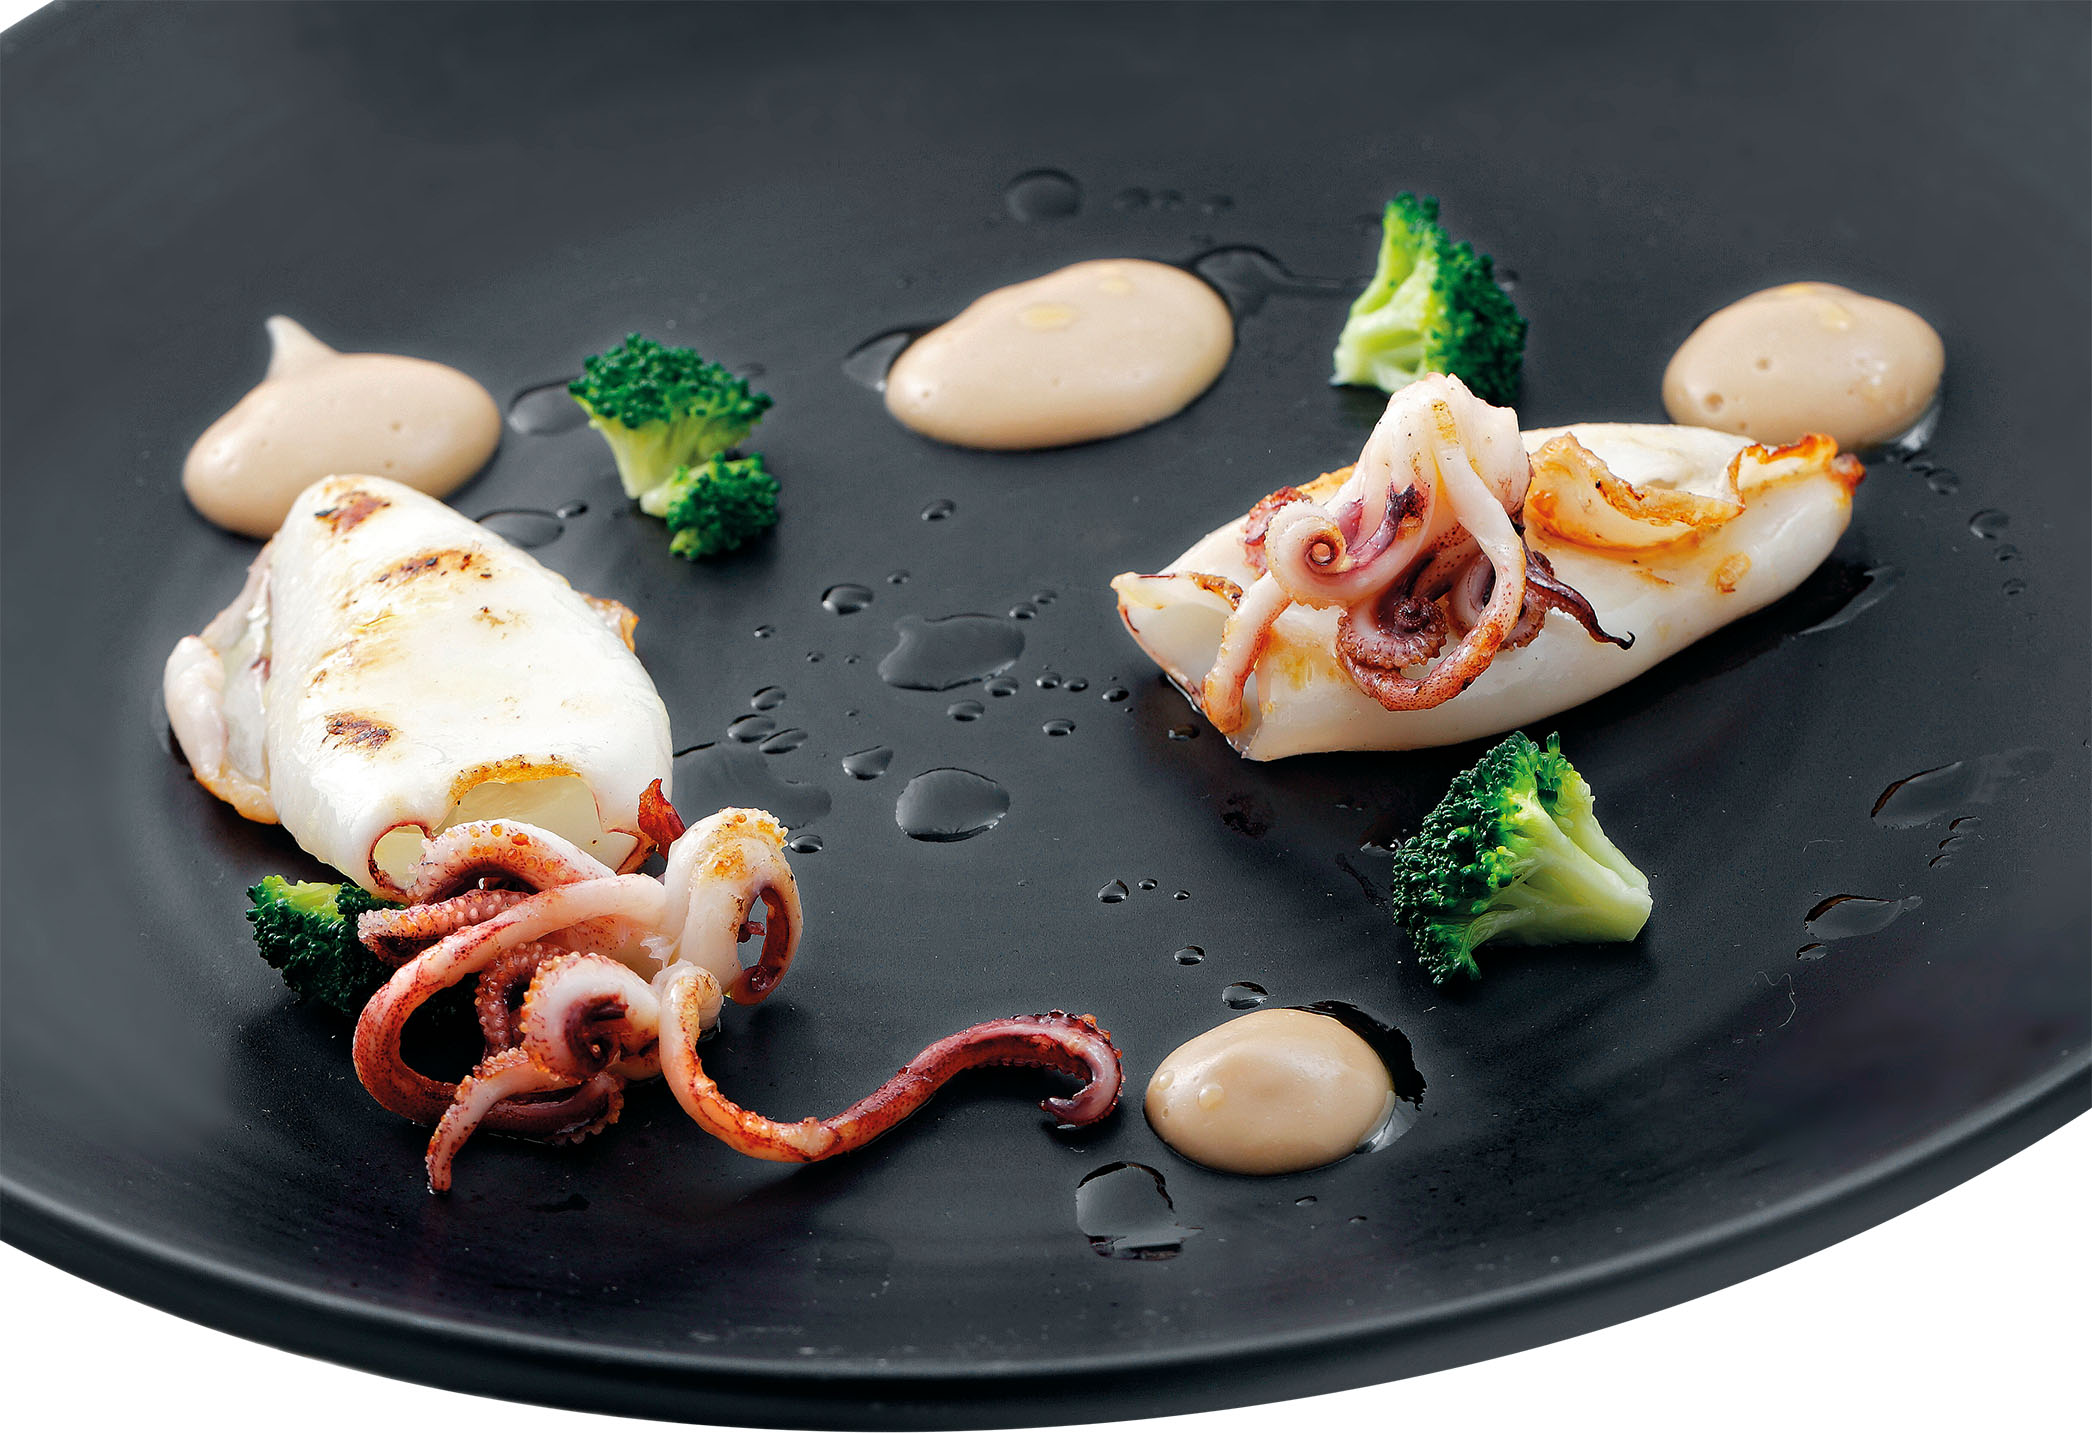 Calamari scottati, finta scamorza affumicata e broccoli croccanti